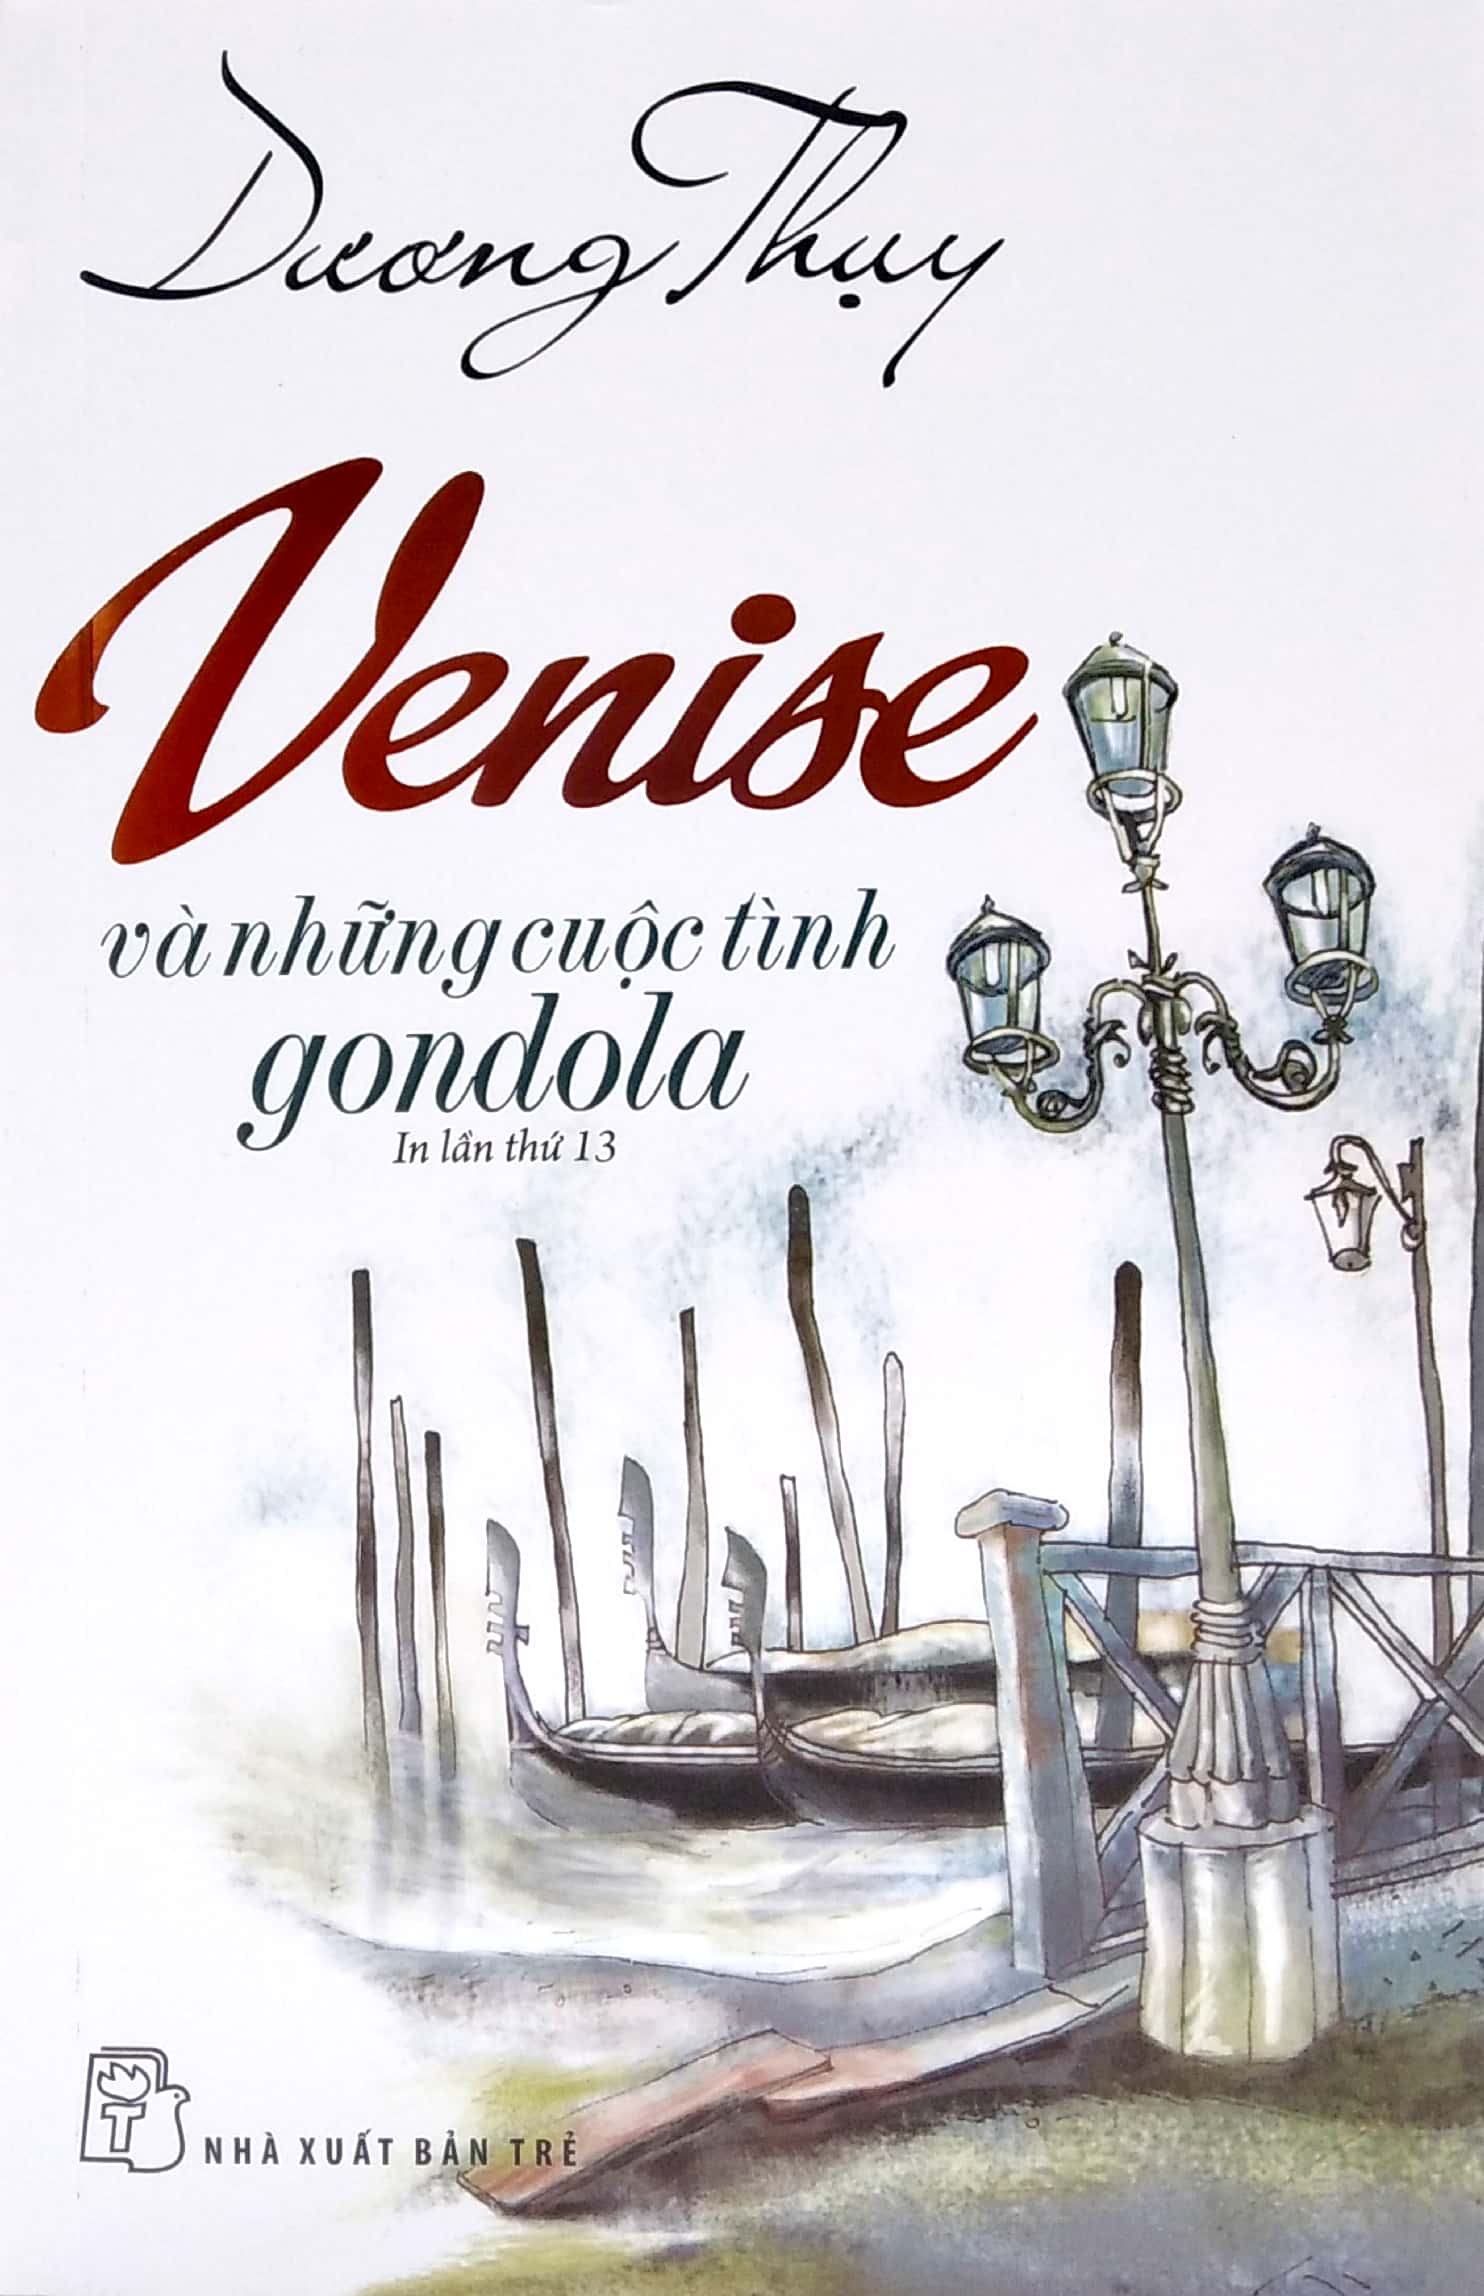 Venise Và Những Cuộc Tình Gondola PDF